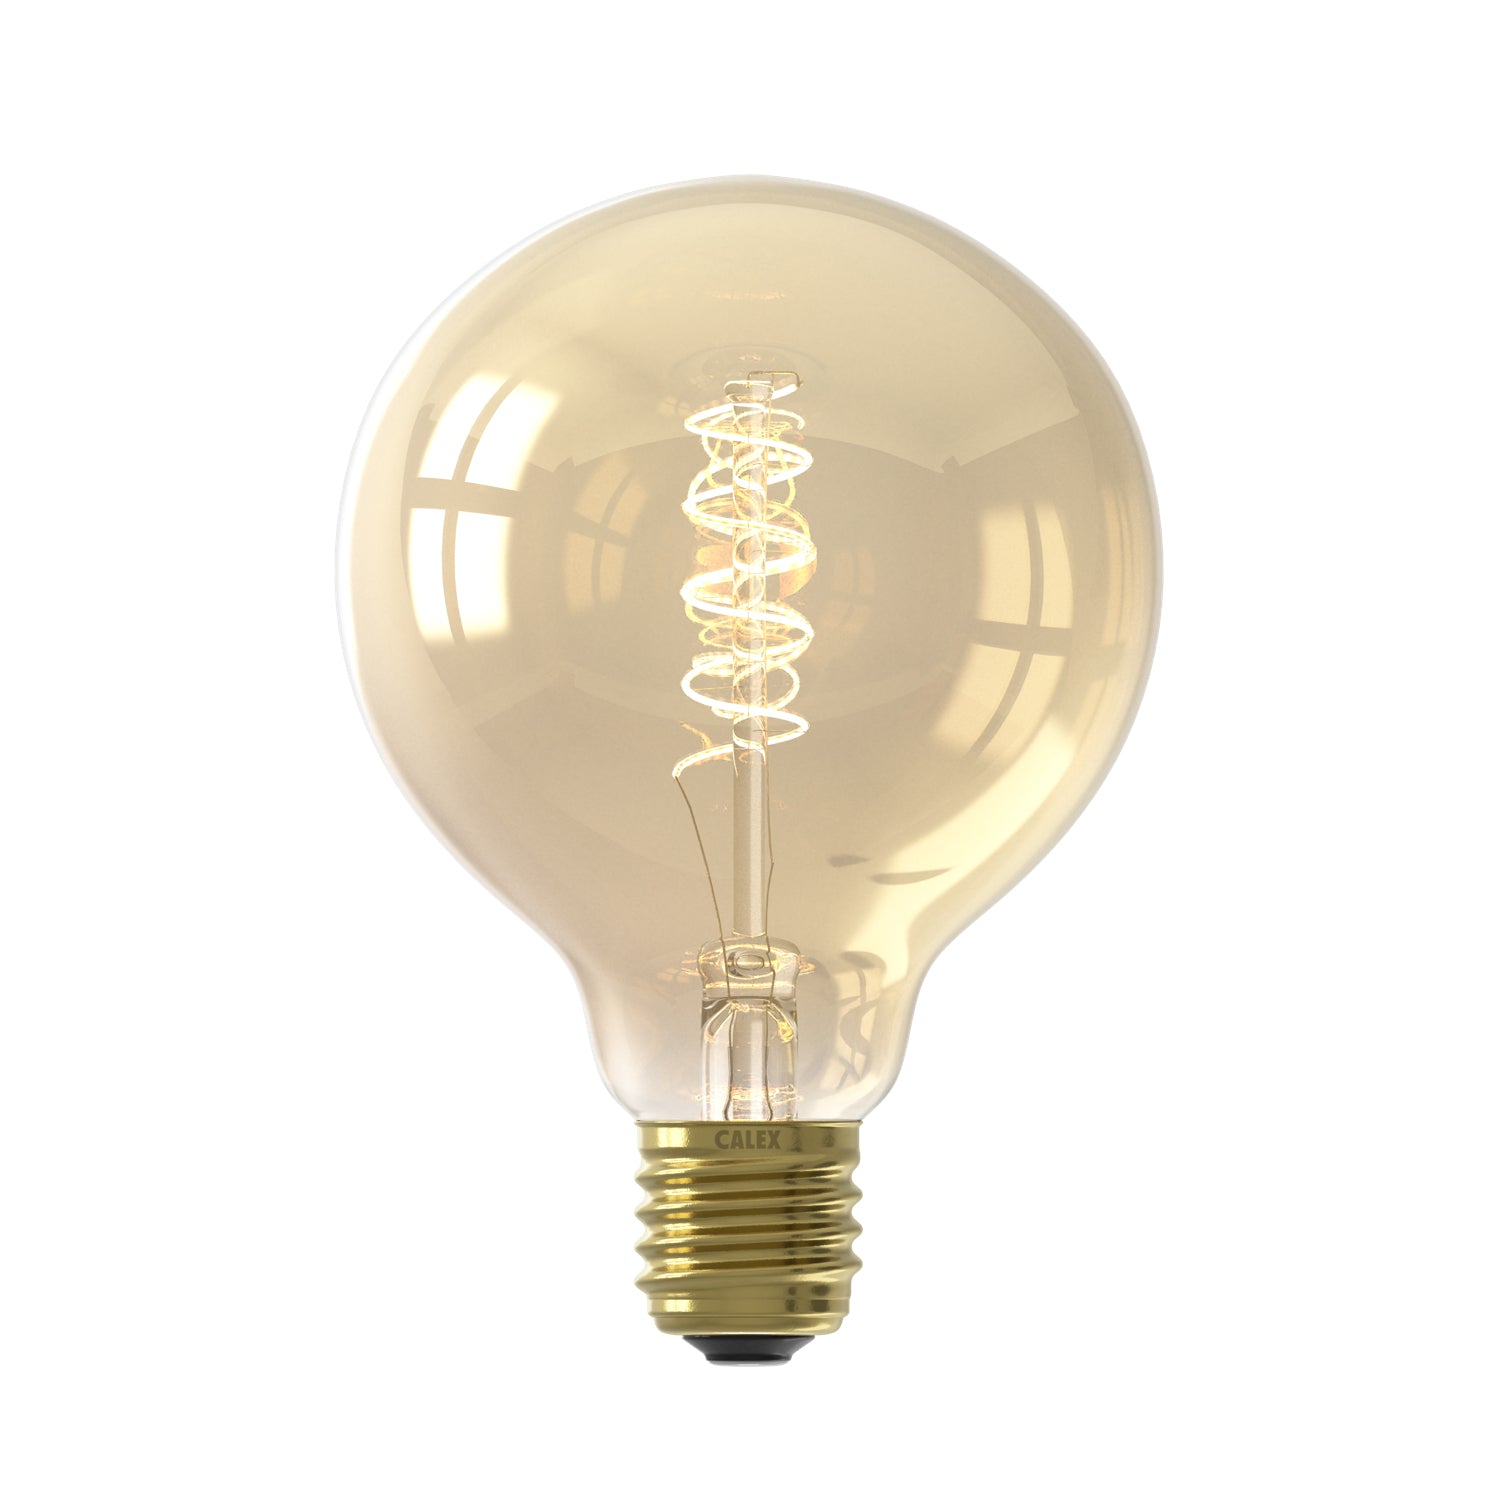 LED lamp lichtbron voor Tolhuijs lampen